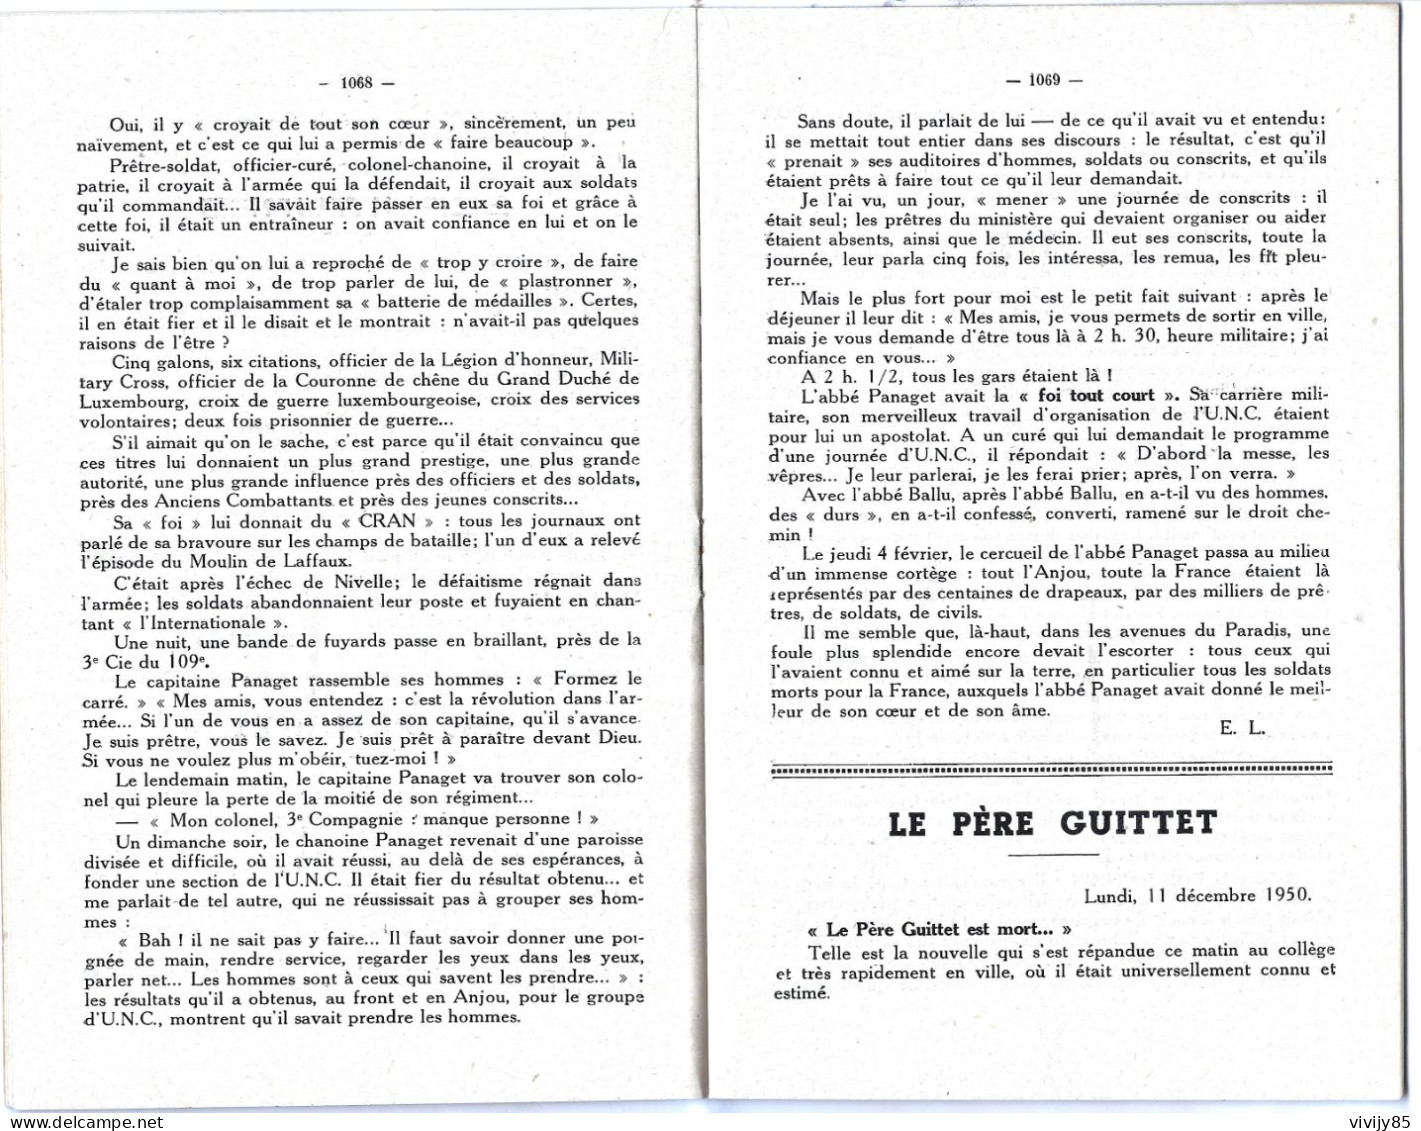 49 - BEAUPREAU - T.Beau Bulletin Semestriel Du Petit Séminaire 1951 - Pays De Loire